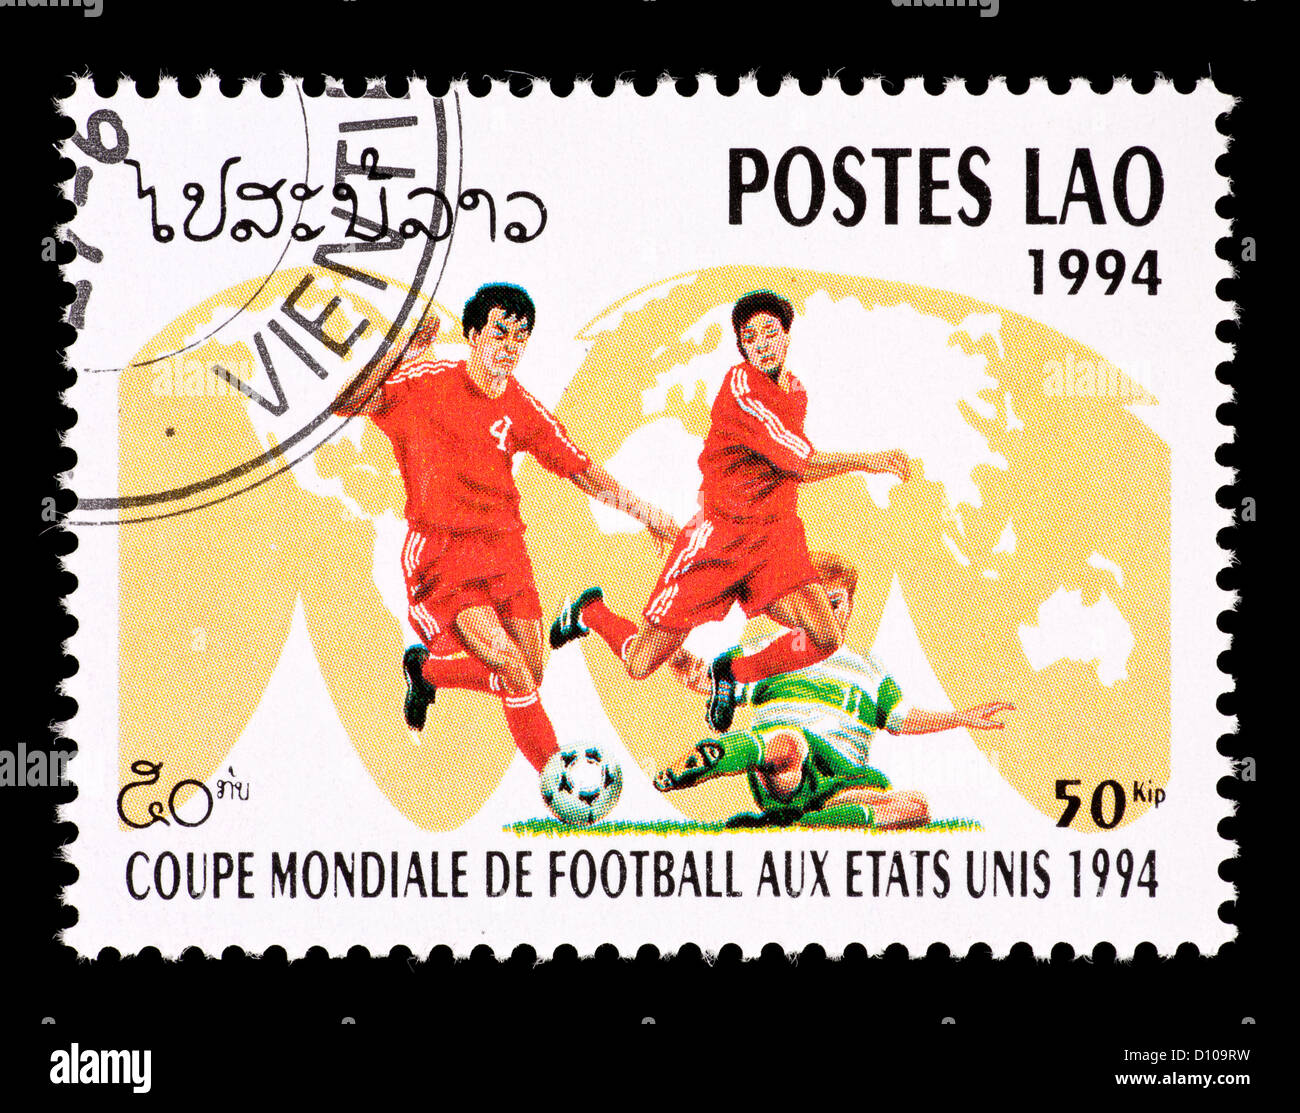 Timbre-poste du Laos représentant trois joueurs de football, émis pour la Coupe du Monde de Football 1994 aux États-Unis. Banque D'Images